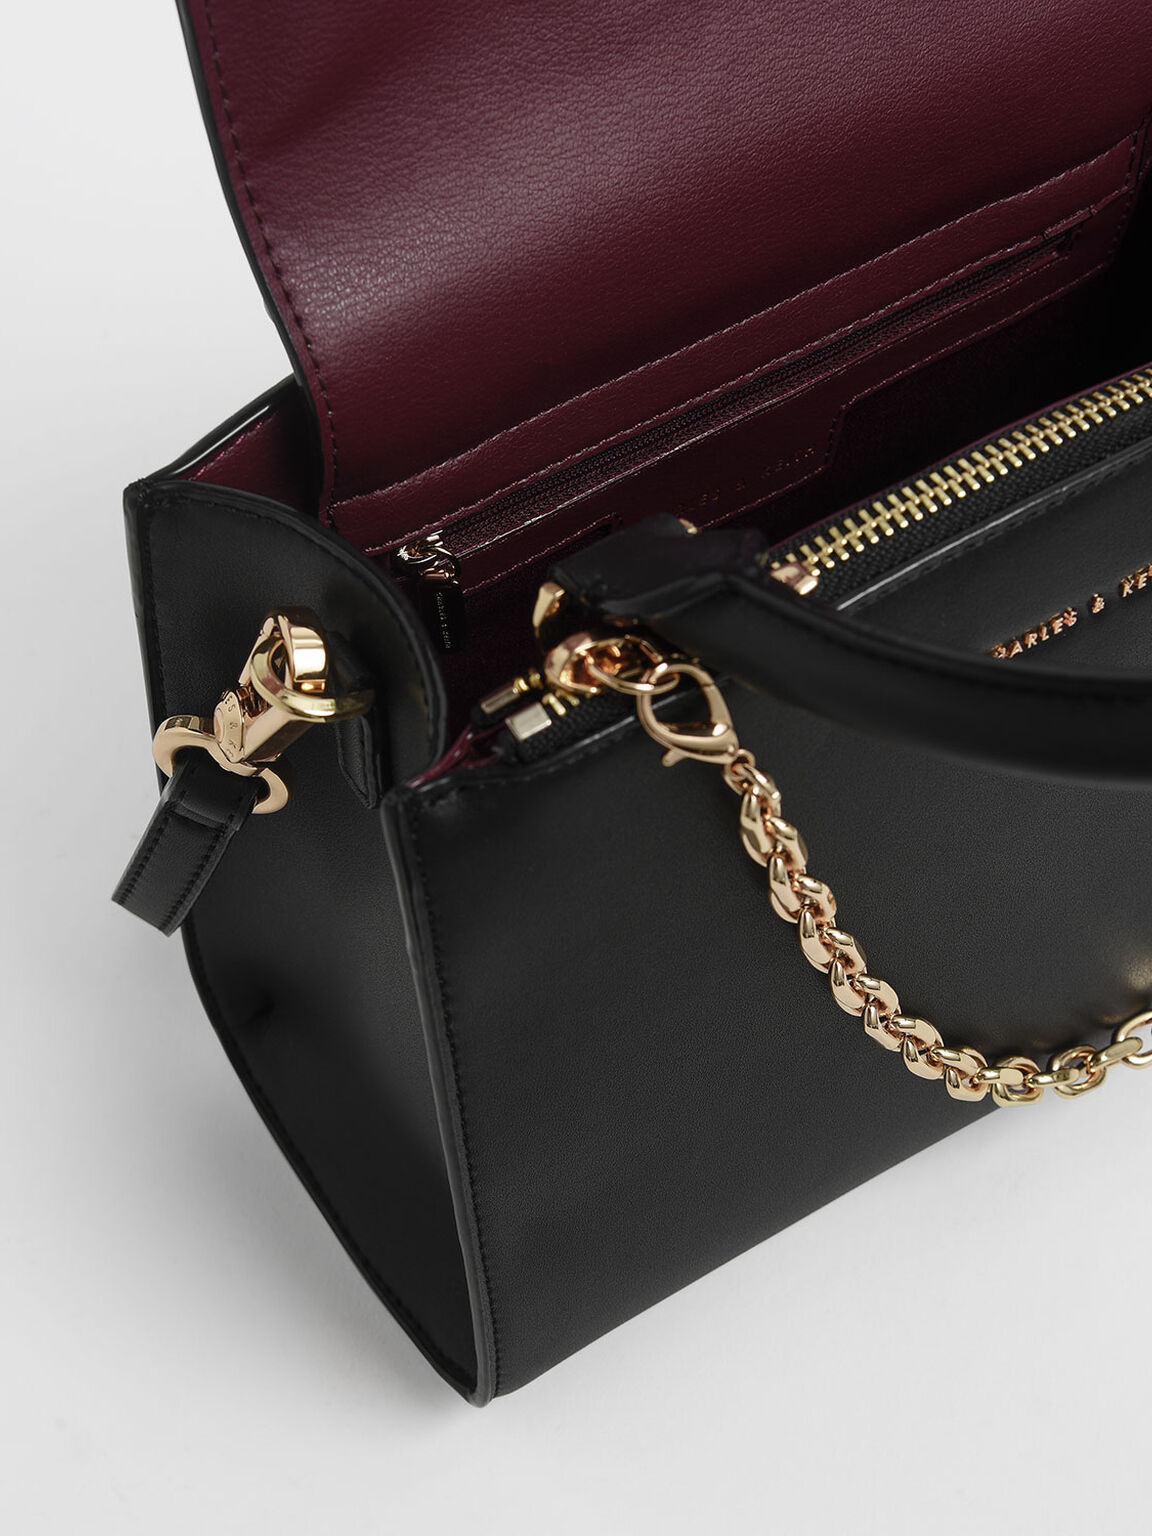 Chain Link Classic Handbag, Black, hi-res